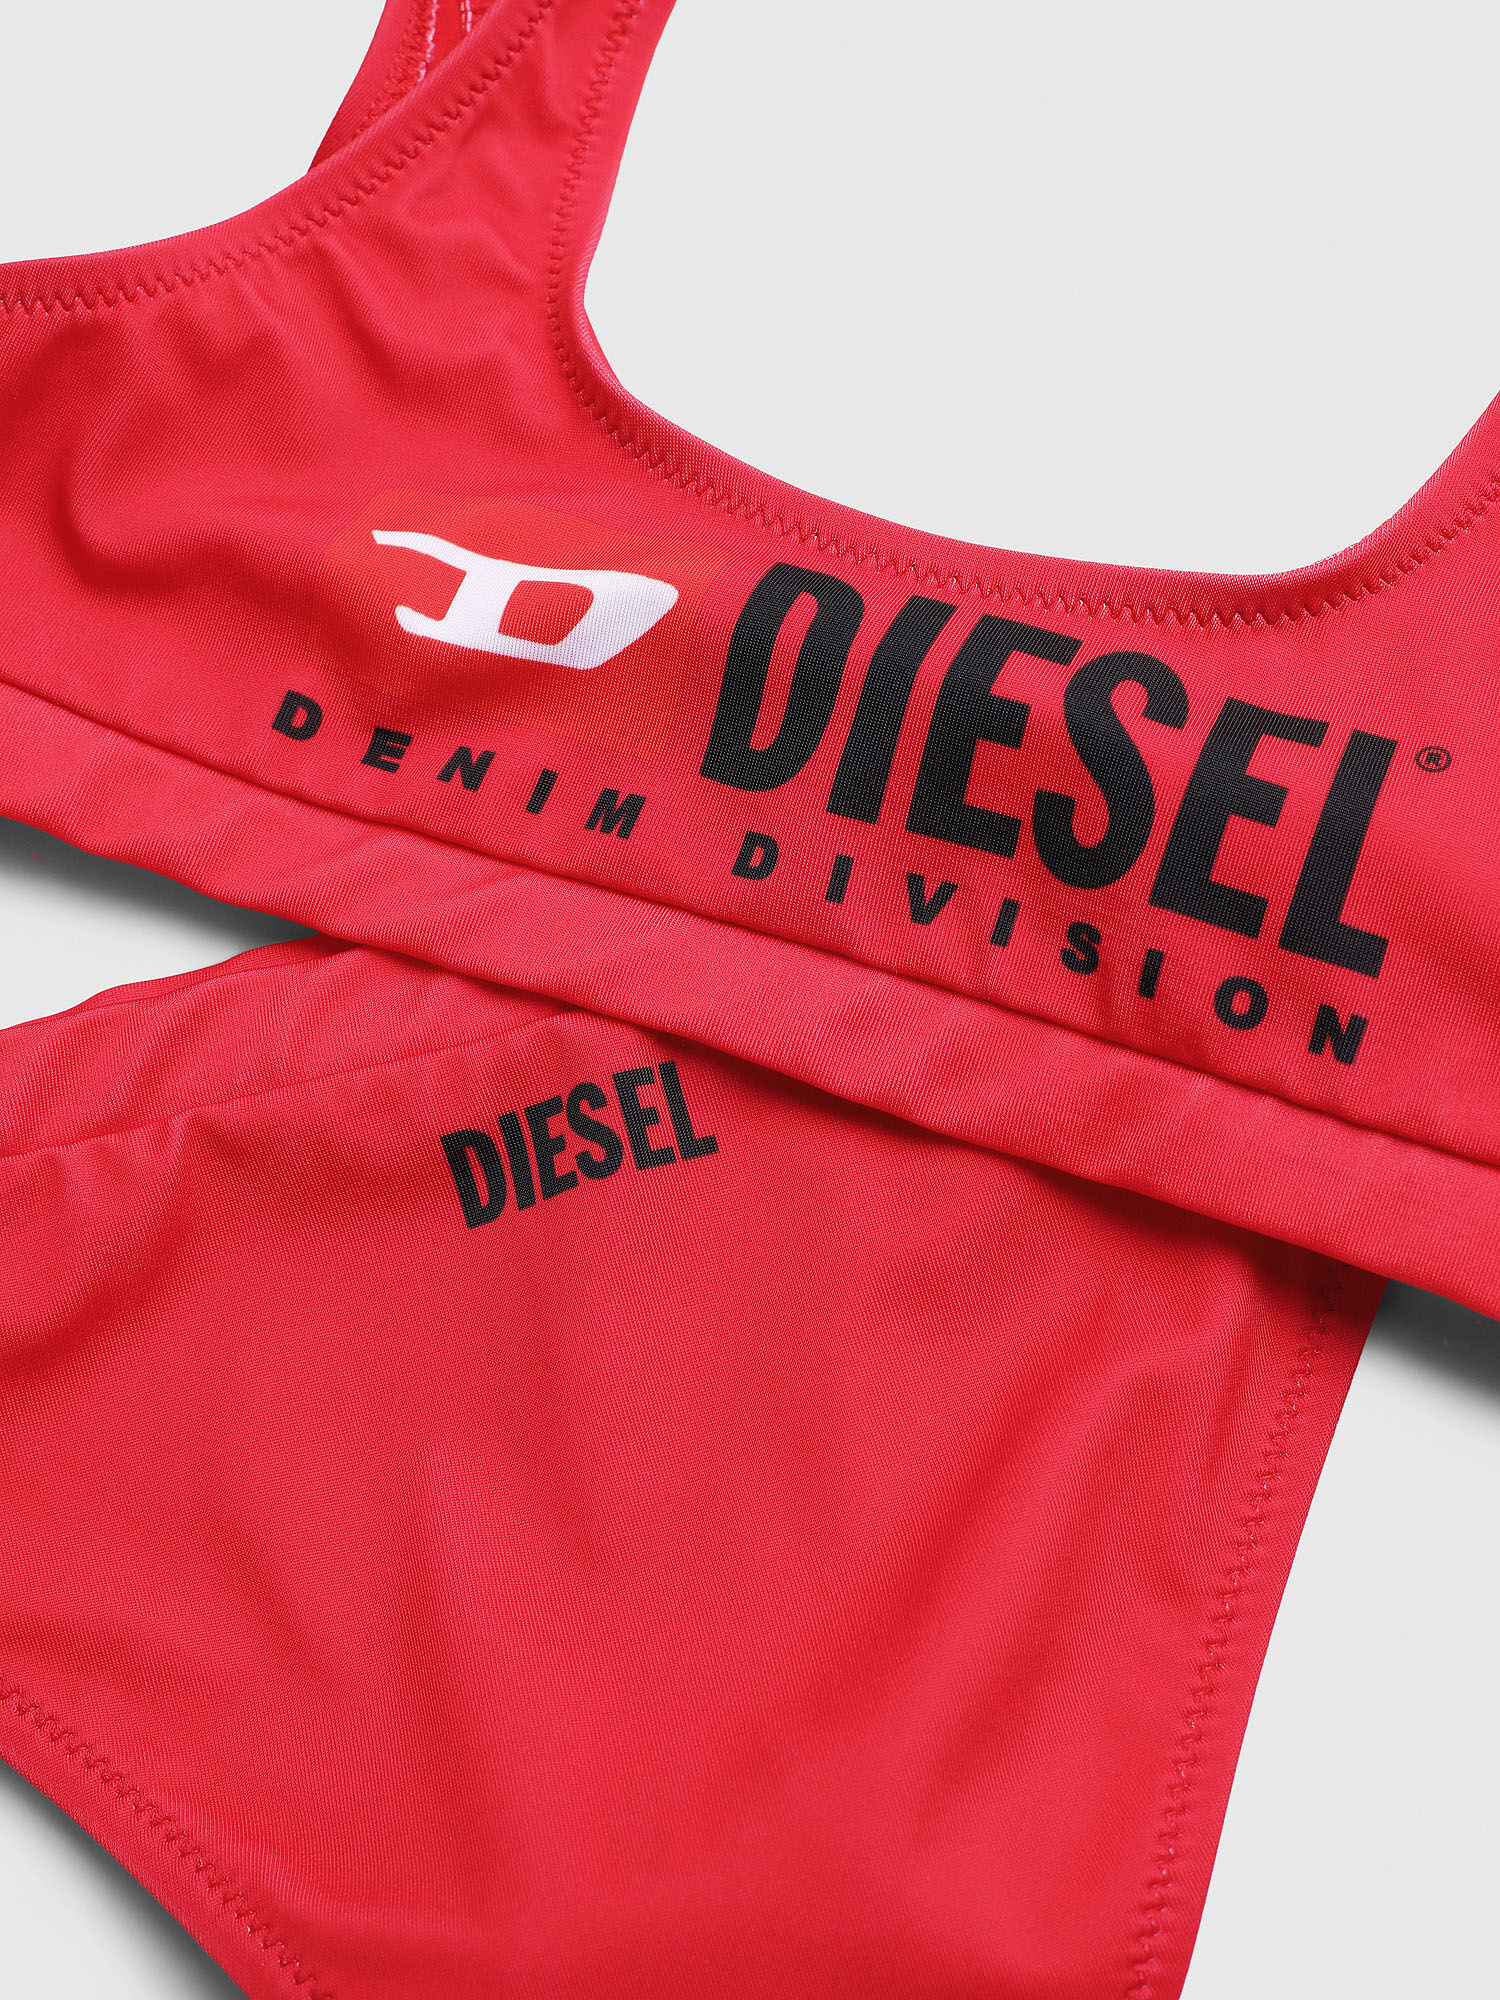 Diesel - METSJ, Rojo - Image 3